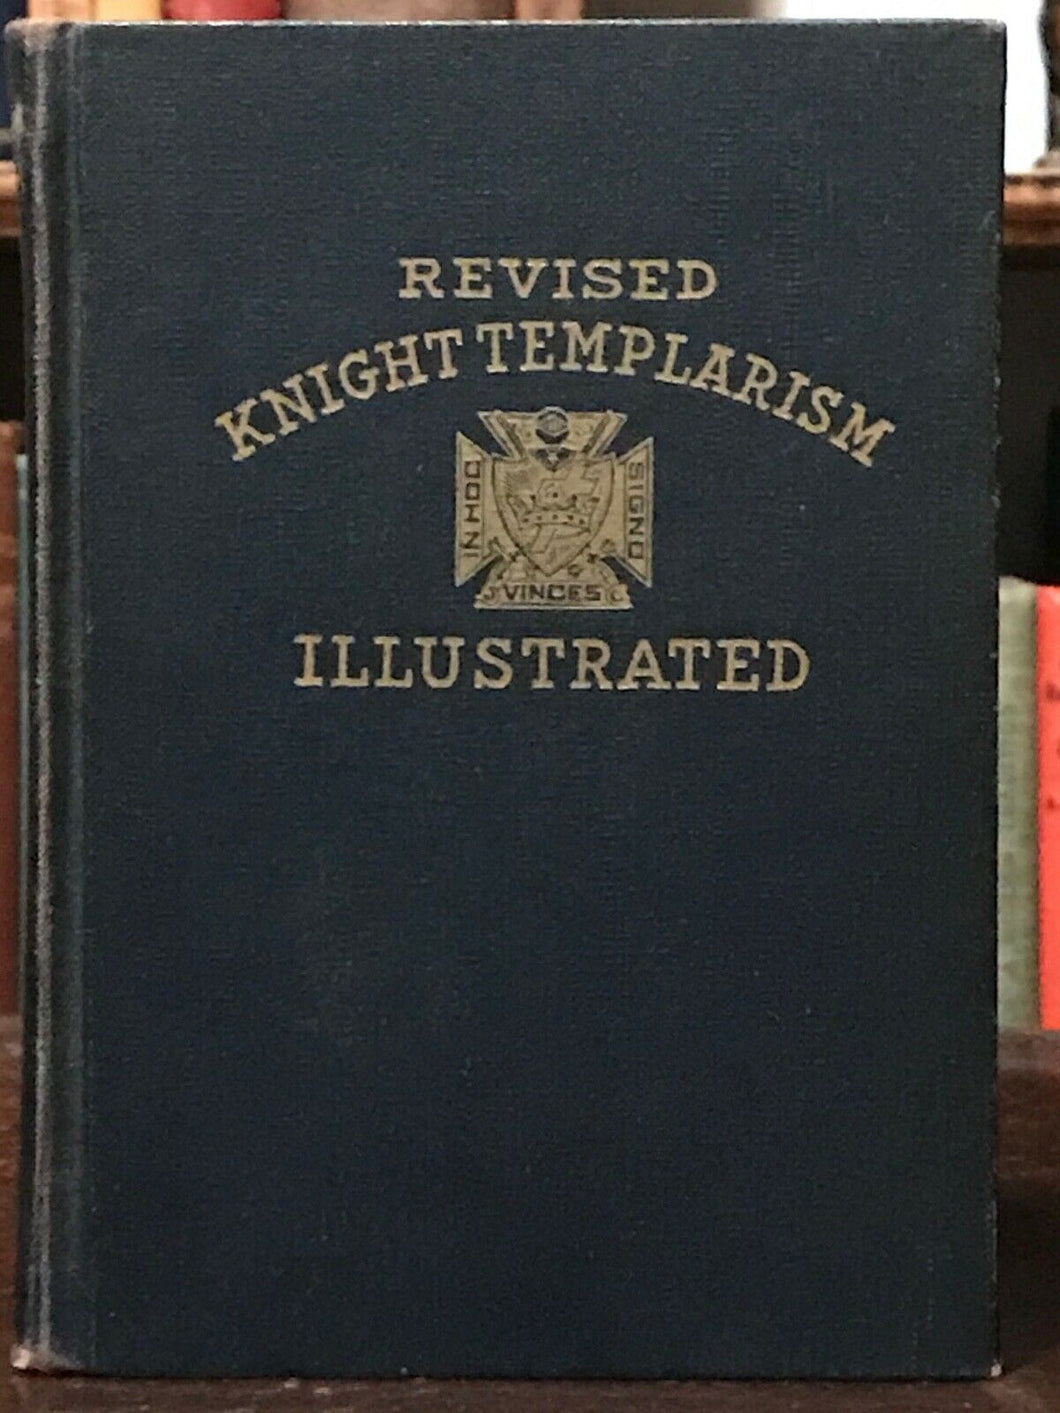 KNIGHT TEMPLARISM ILLUSTRATED - Blanchard, 1961 - SECRET SOCIETY KNIGHTS TEMPLAR